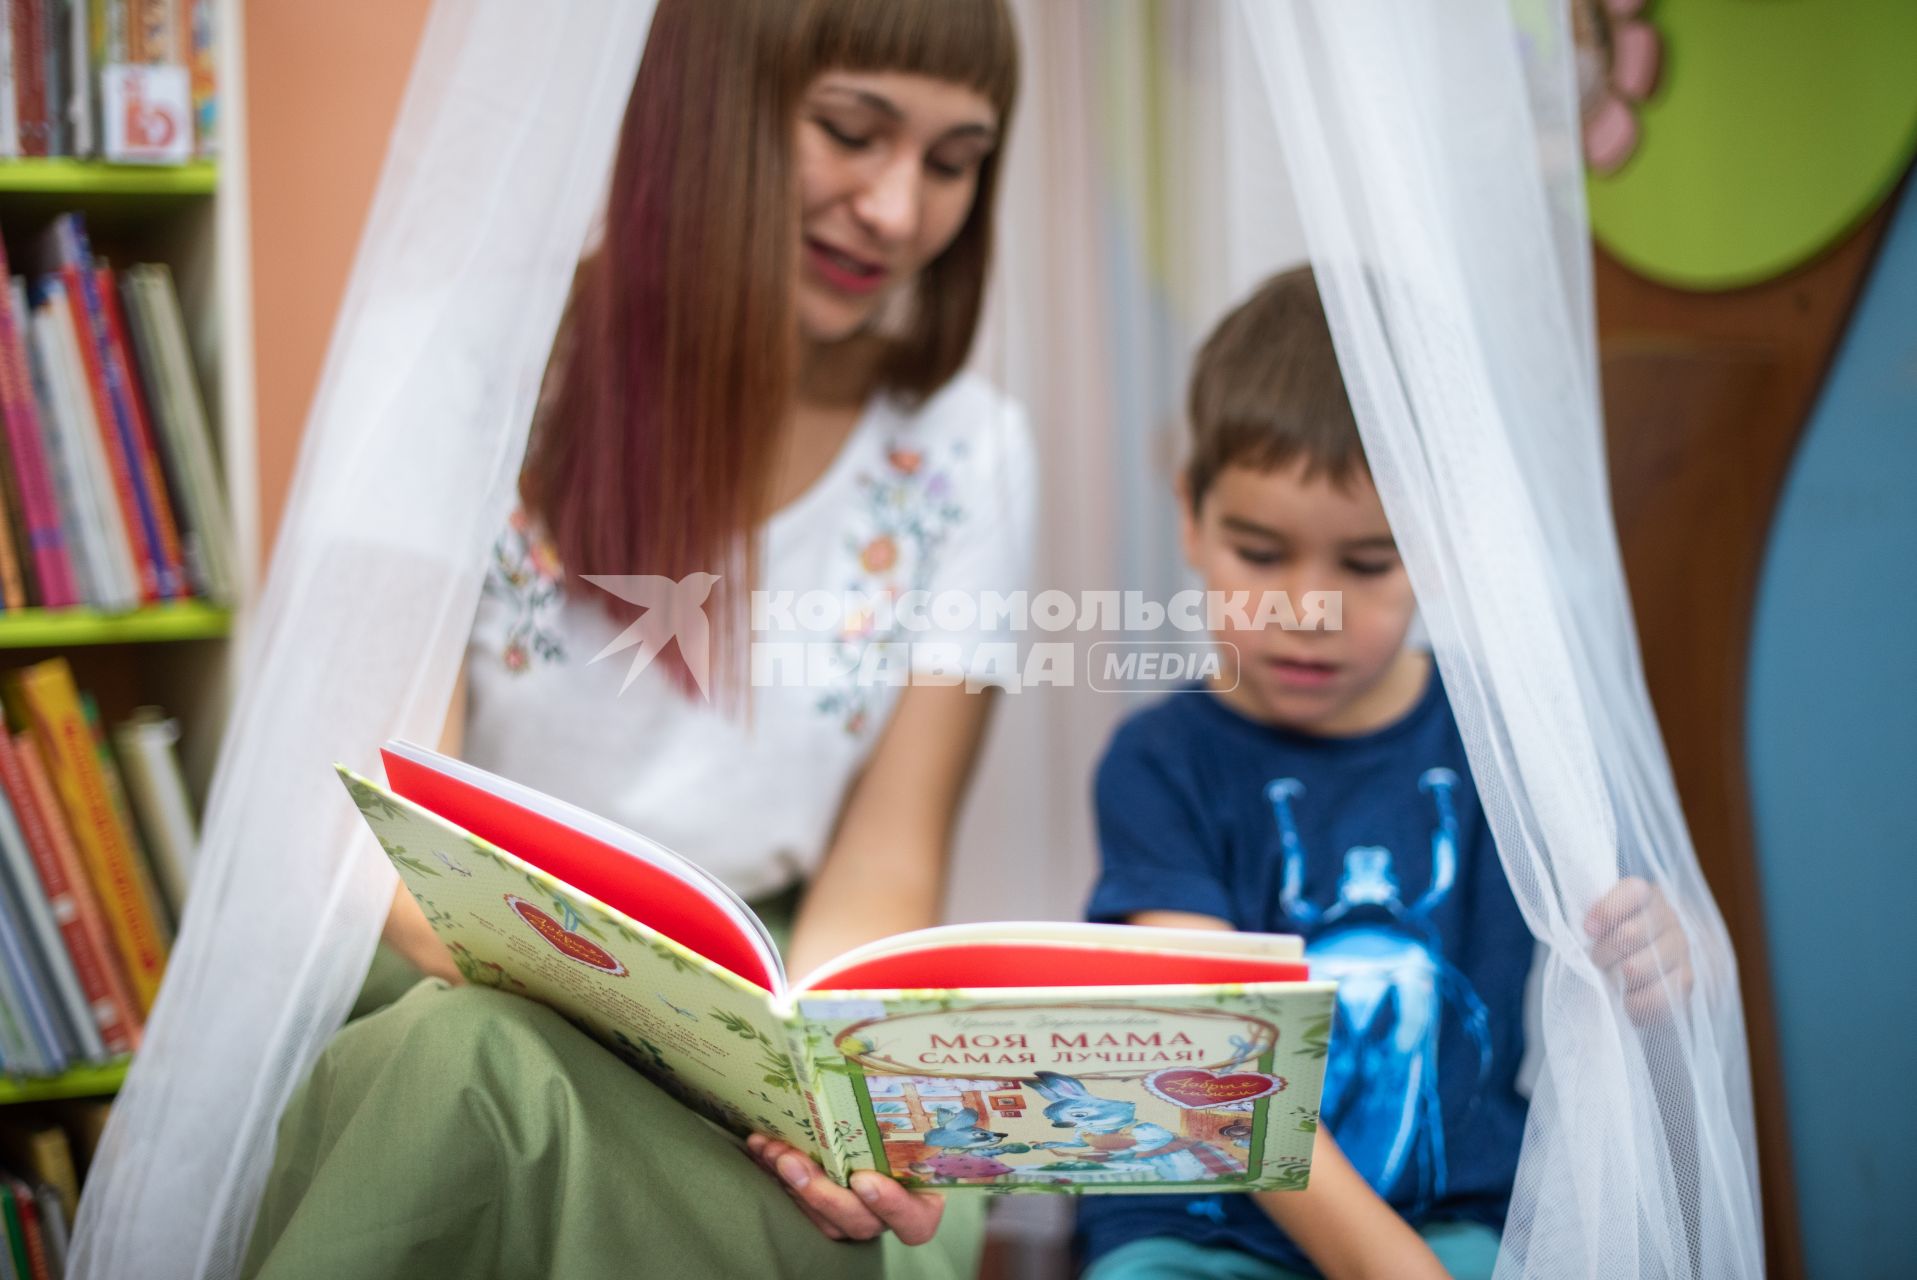 Самара. Женщина с ребенком в детской библиотеке.